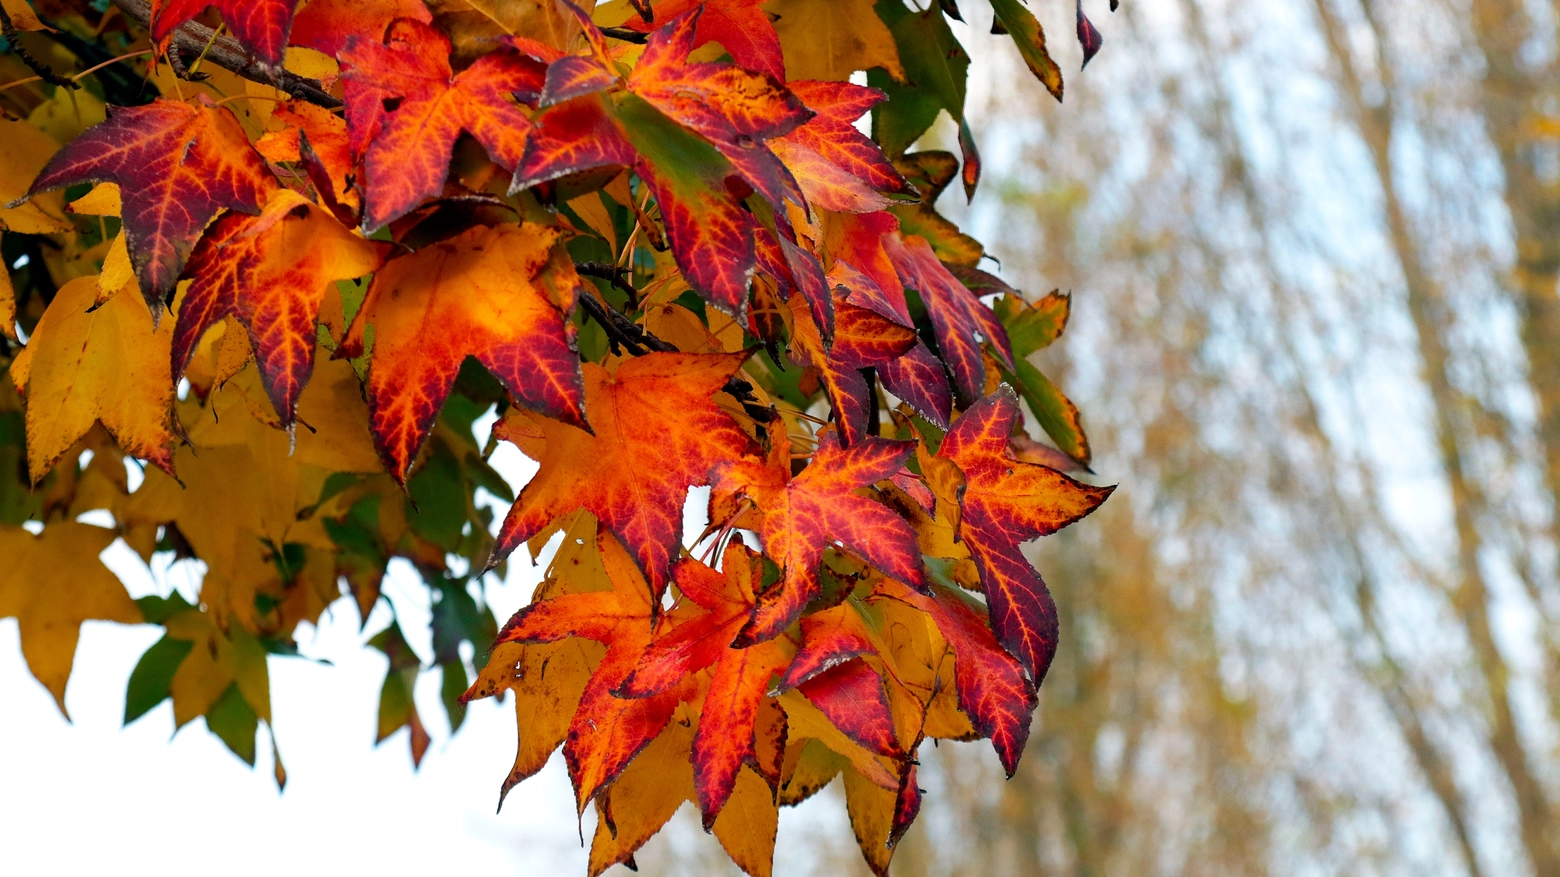 Equinozio d'autunno, inizia la stagione delle foglie (foto Germogli)